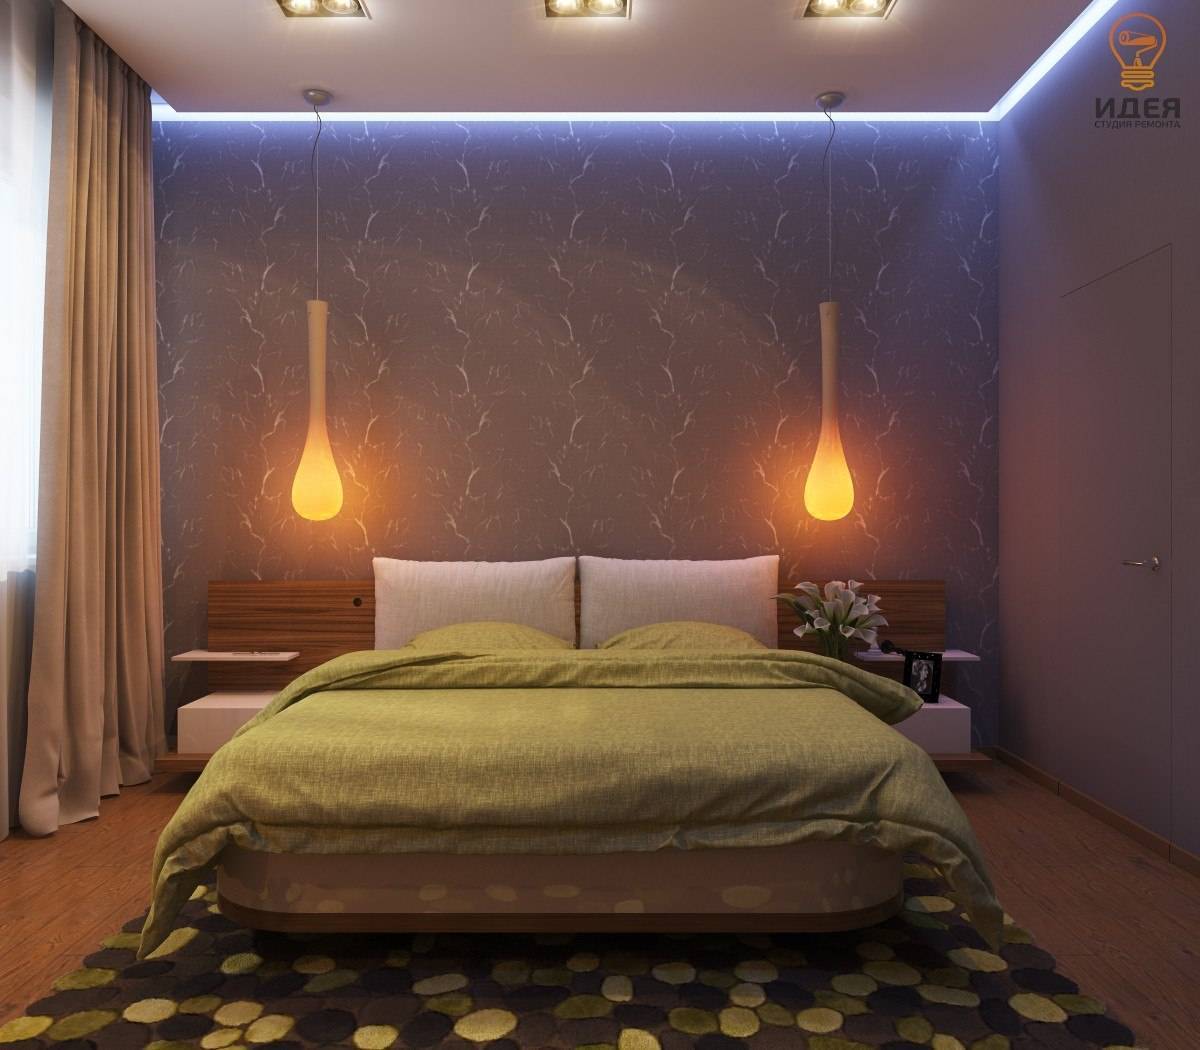 Освещение натяжных потолков: варианты света в комнате с натяжным потолком, примеры дизайна потолочного освещения в зале, как сделать свет